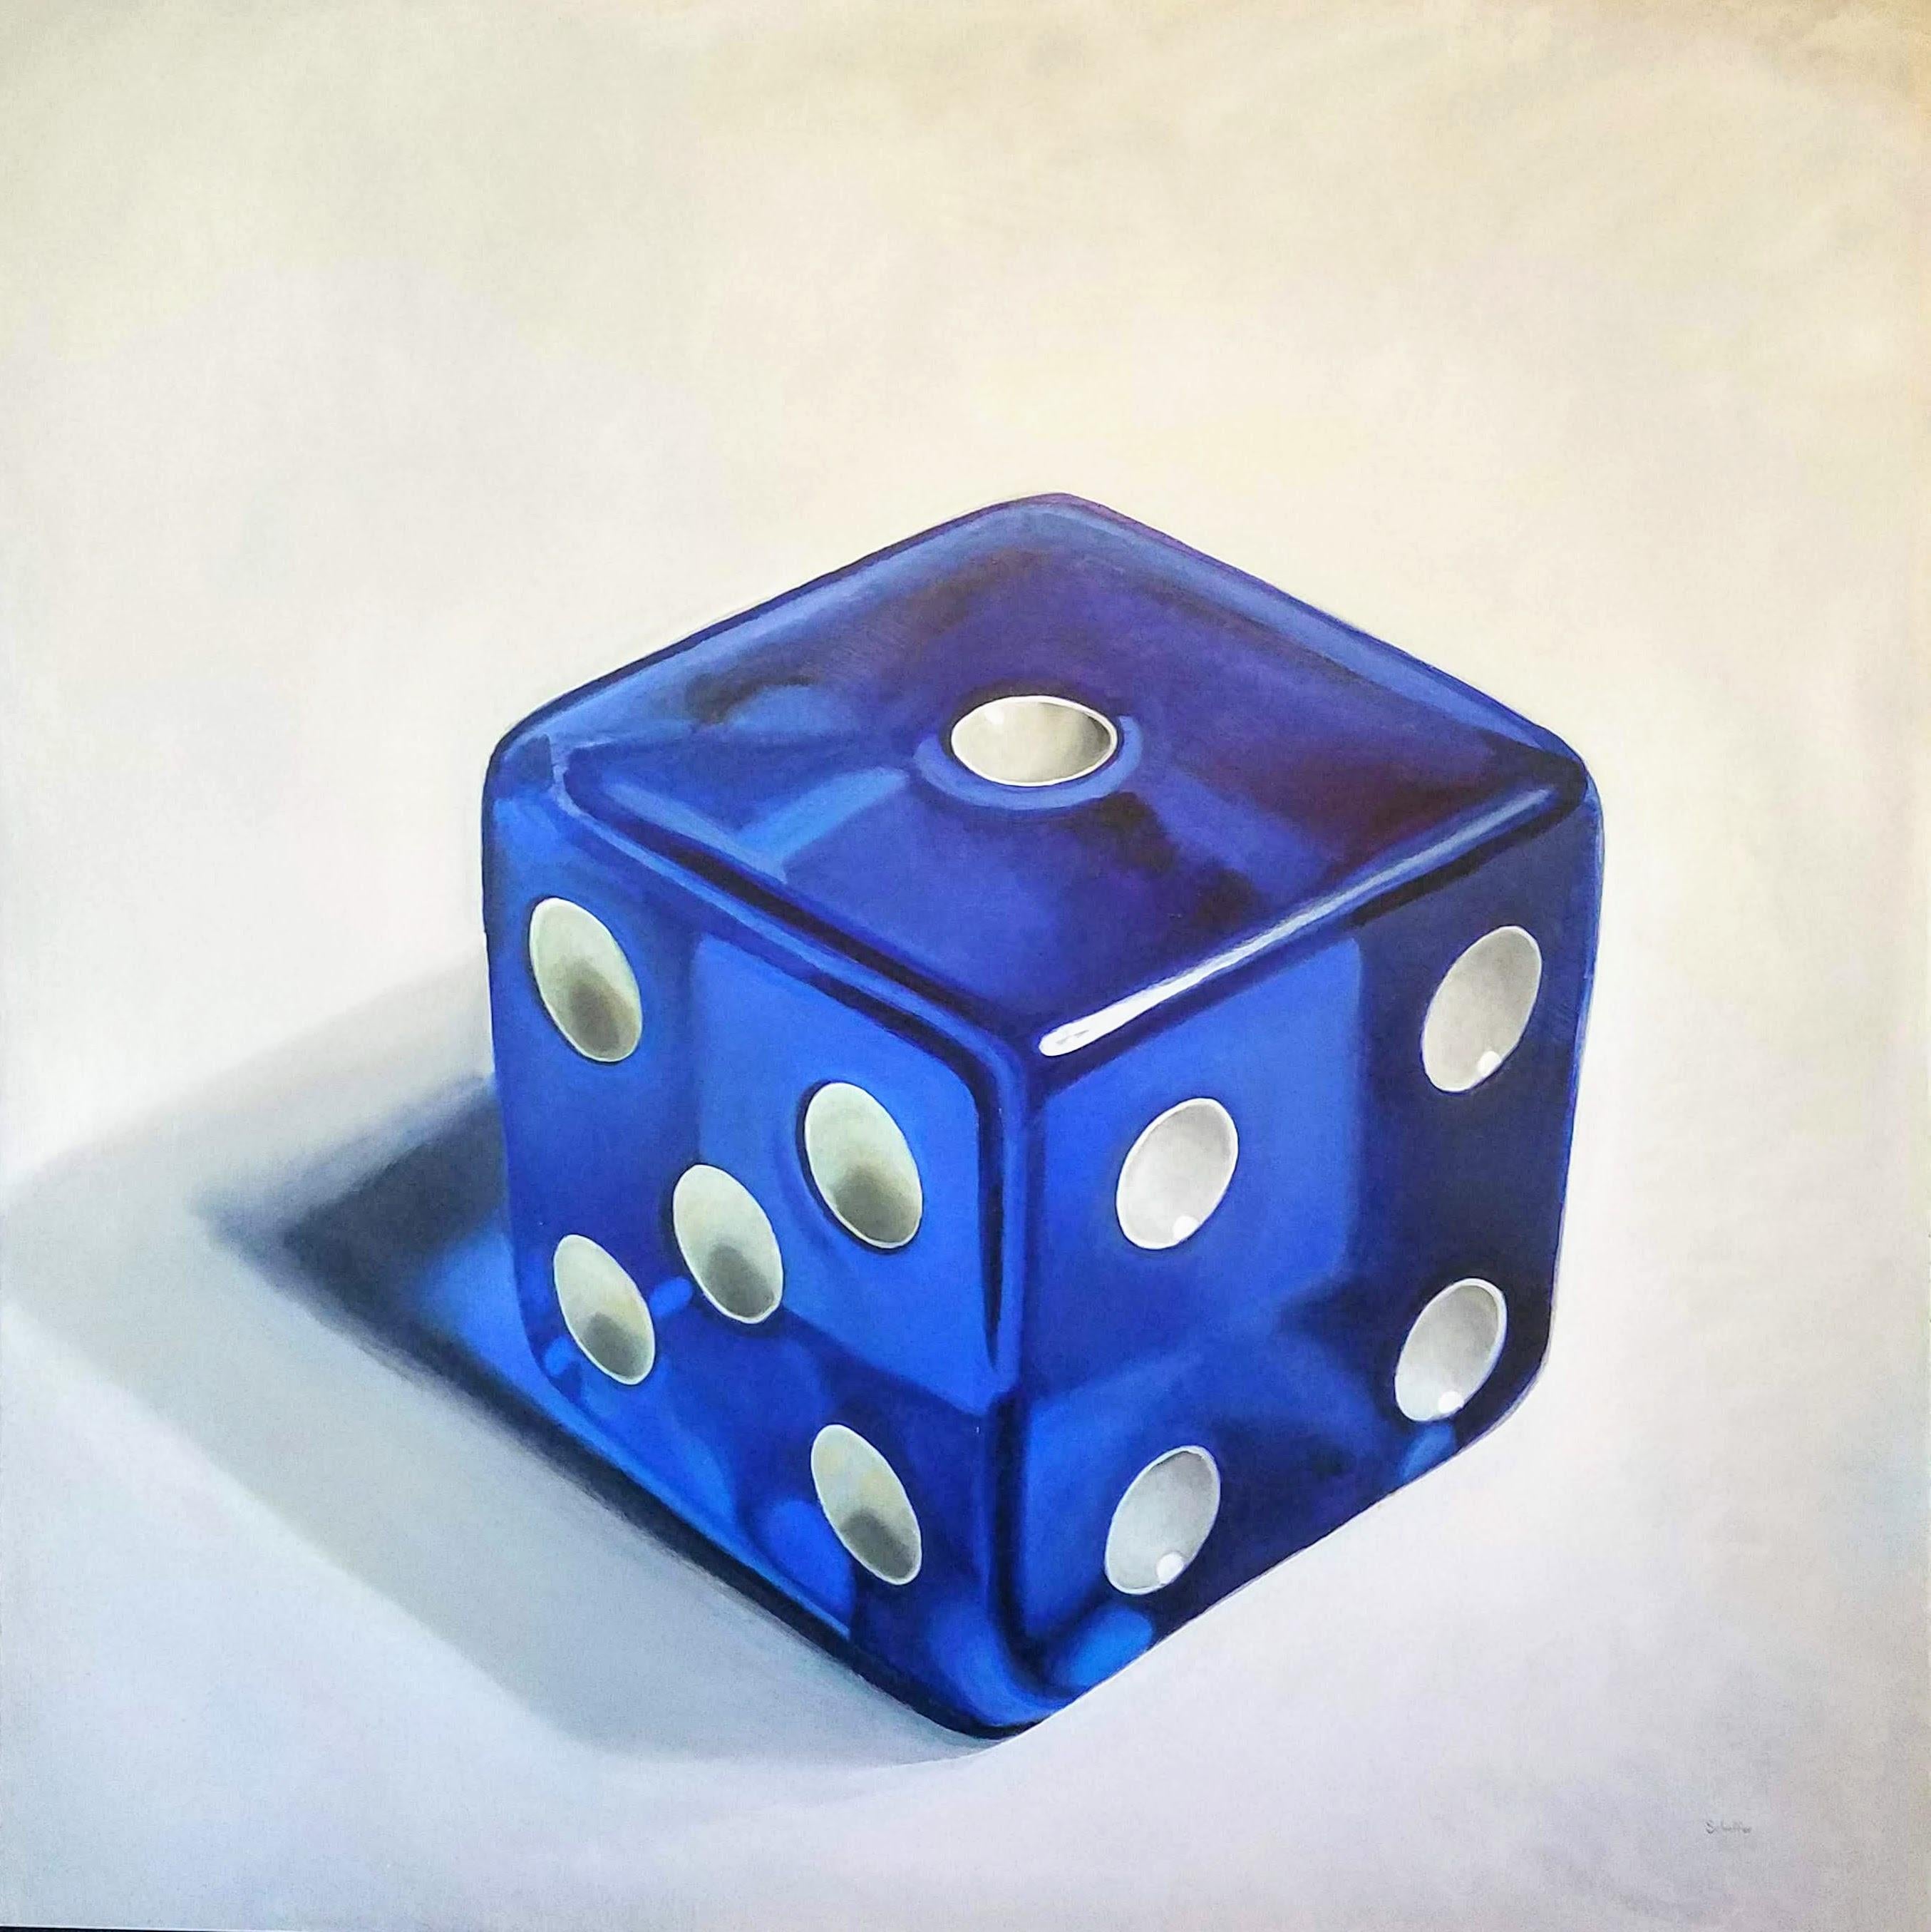 Still-Life Painting John Schieffer - « Royal Blue Luck » (Bonheur bleu roi)